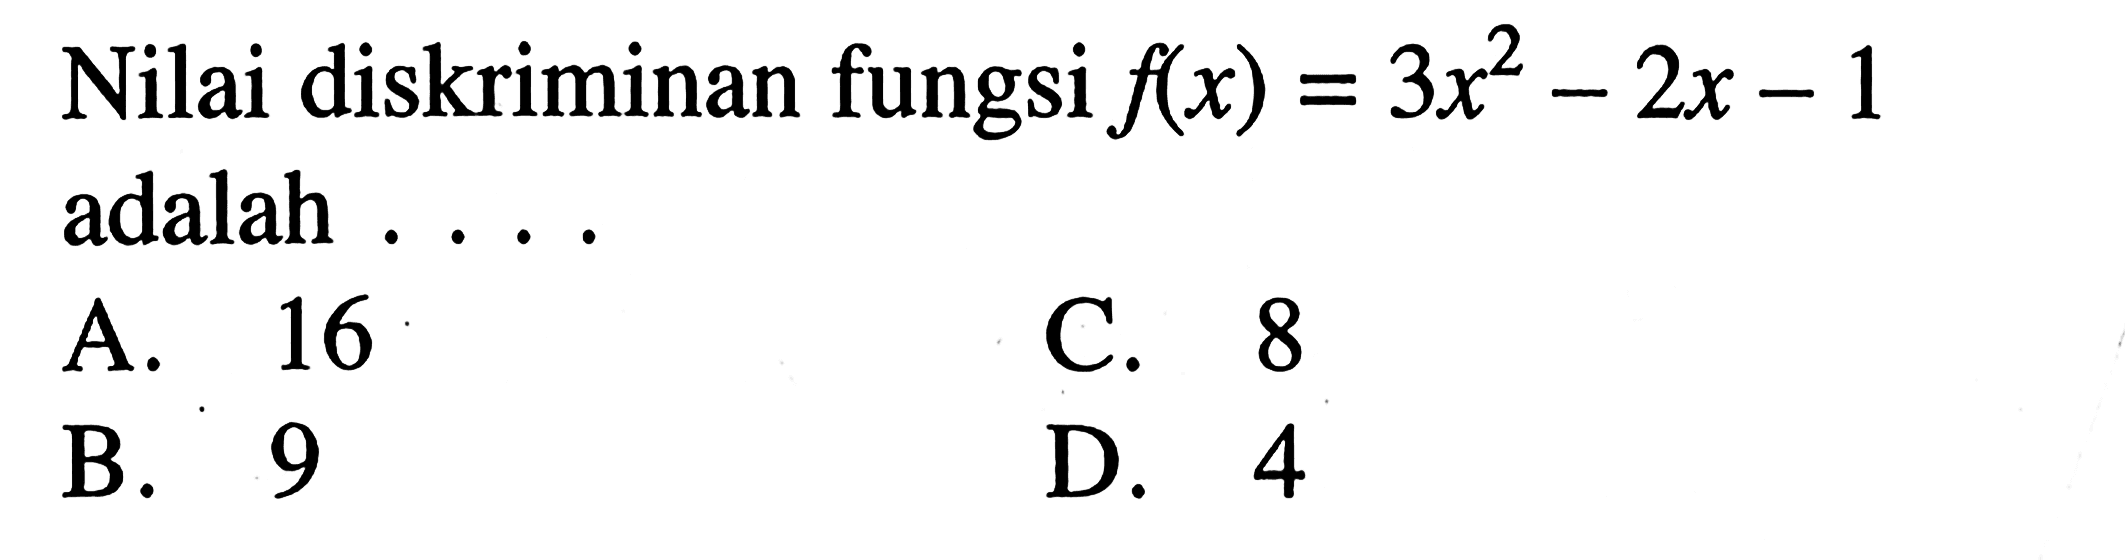 Nilai diskriminan fungsi flx) = 3x^2- 2x - 1 adalah . . . . A.16 B. 9 C. 8 D. 4